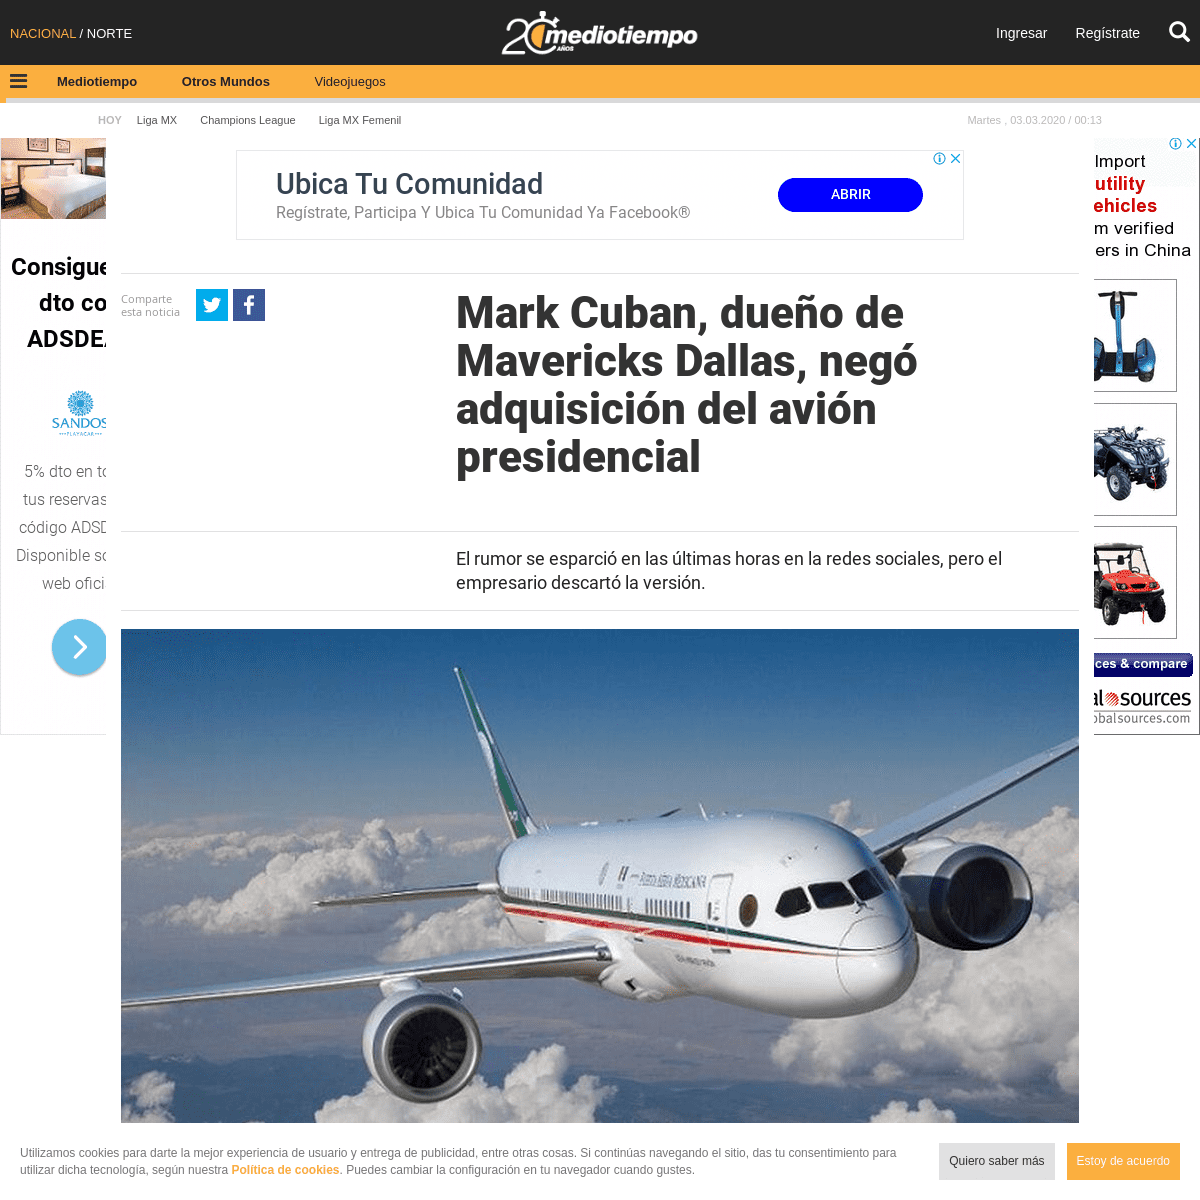 A complete backup of www.mediotiempo.com/otros-mundos/mark-cuban-dueno-mavericks-dallas-compro-avion-presidencial